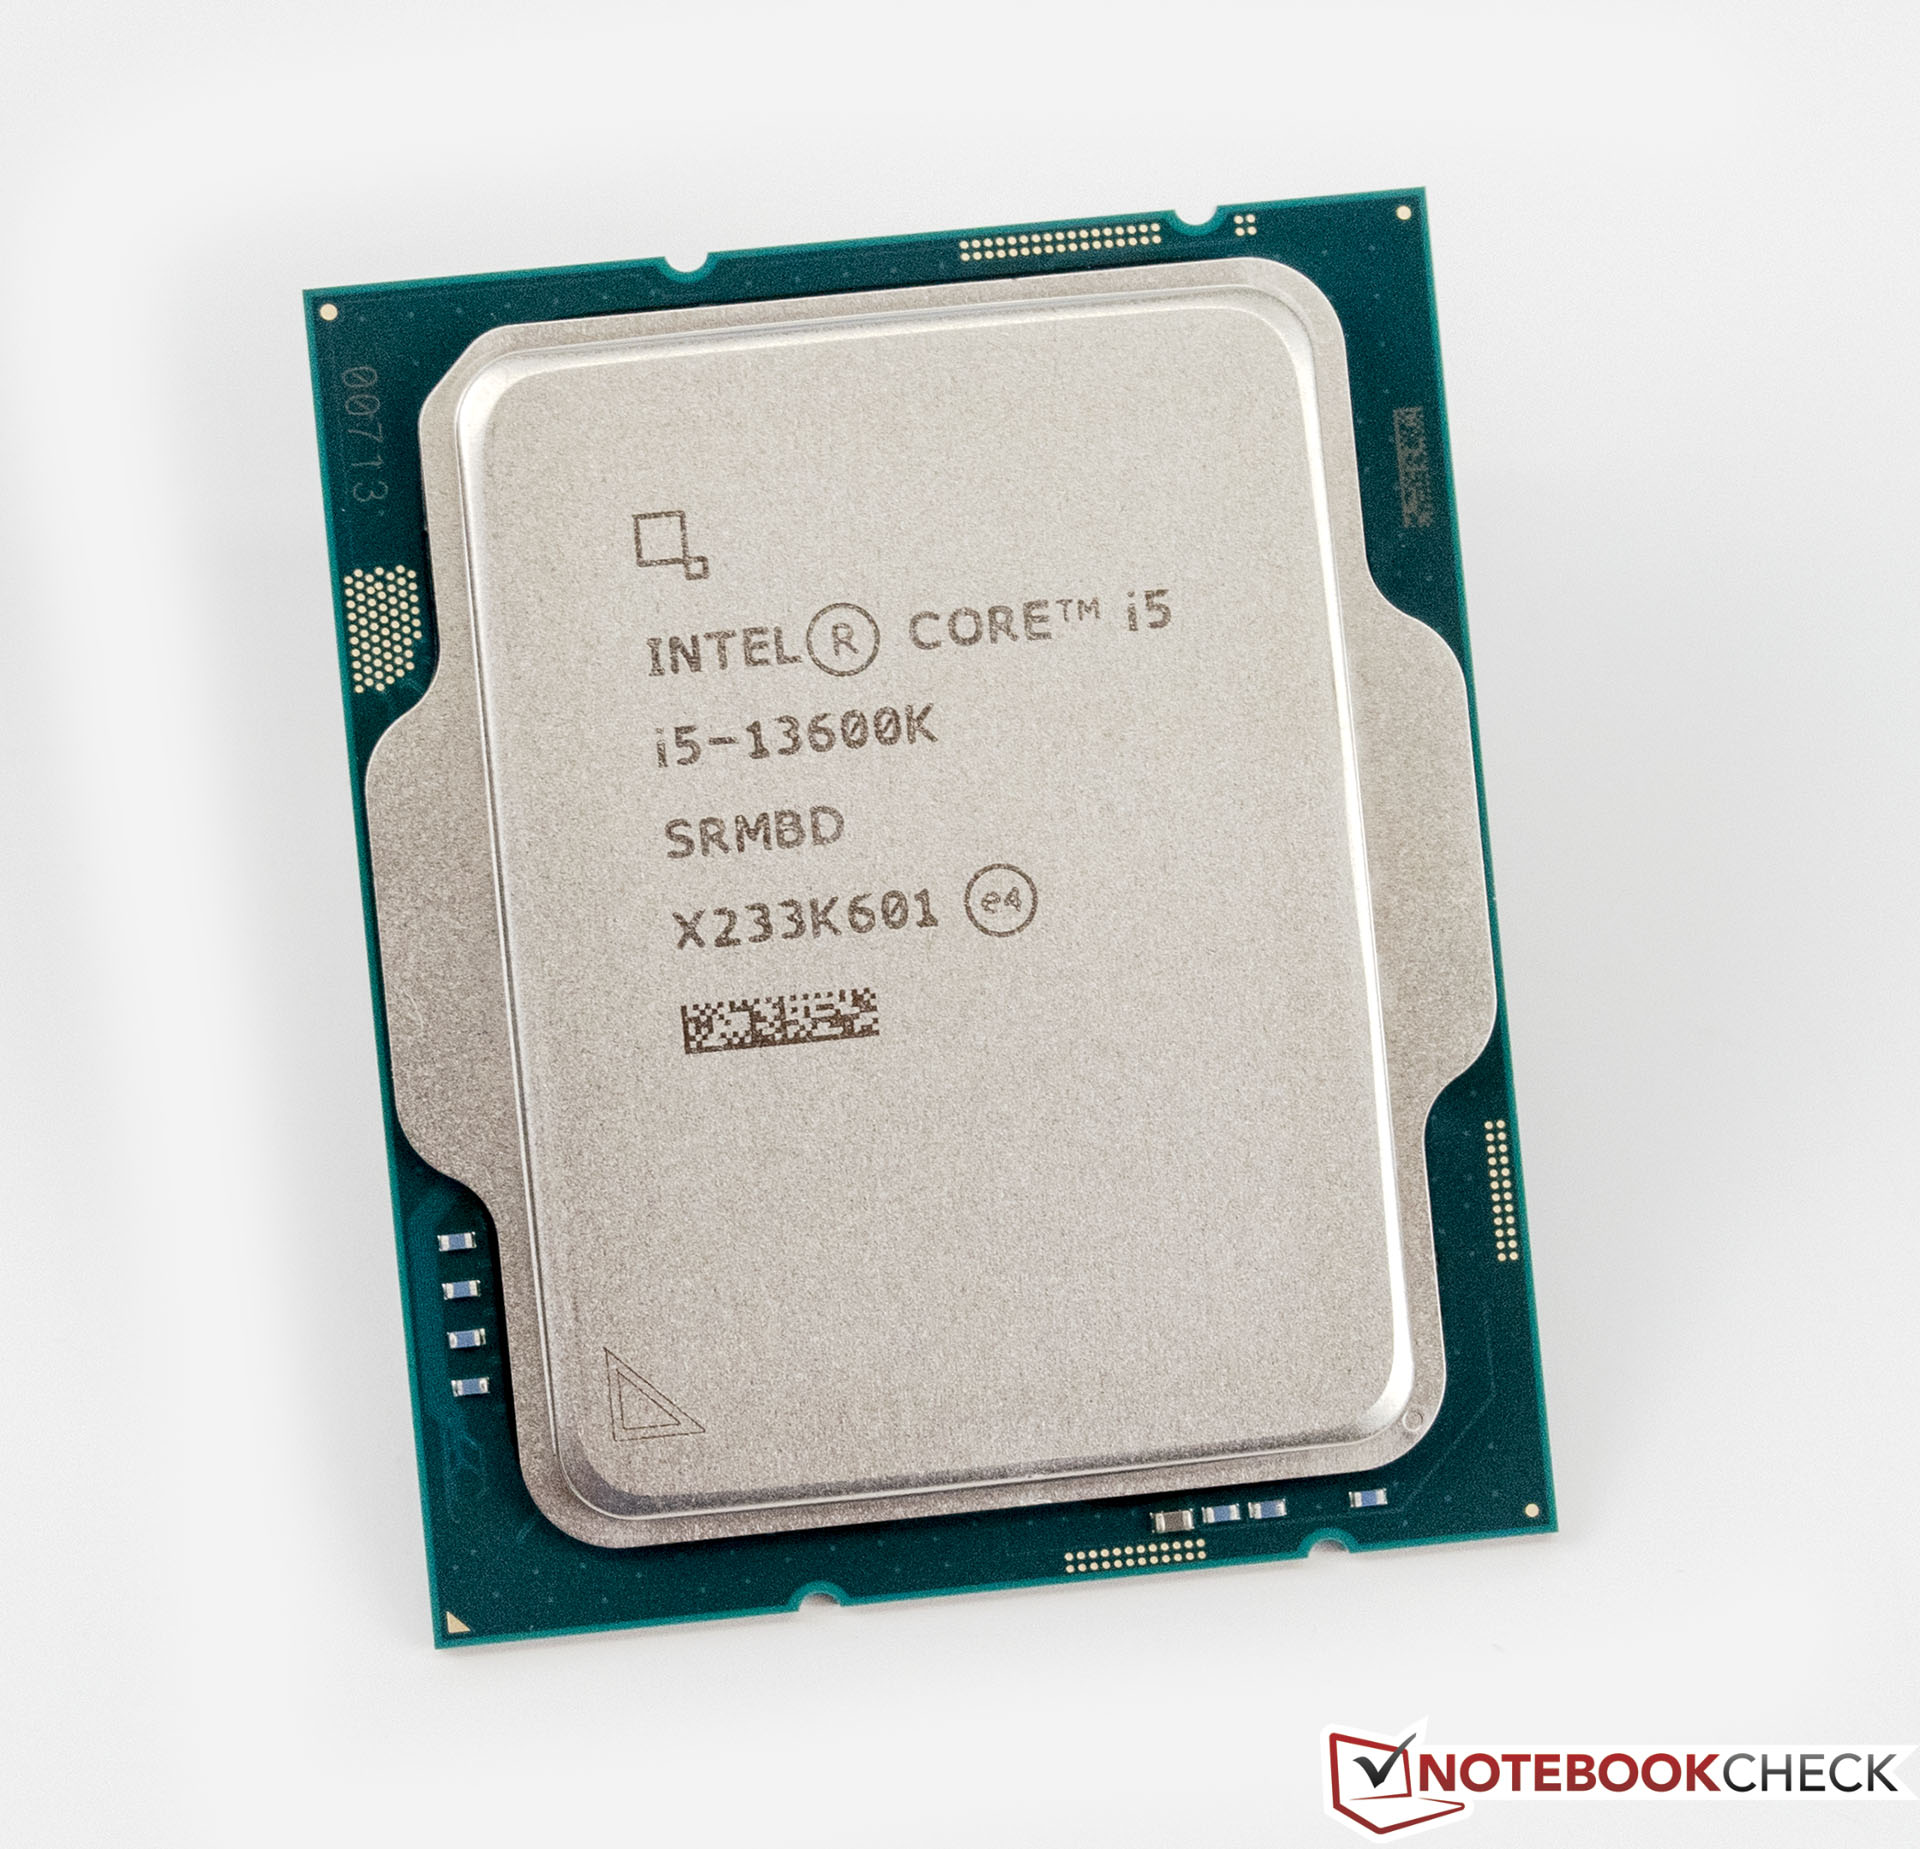 Intel Core i5-10600K vs Intel Core i5-13600K